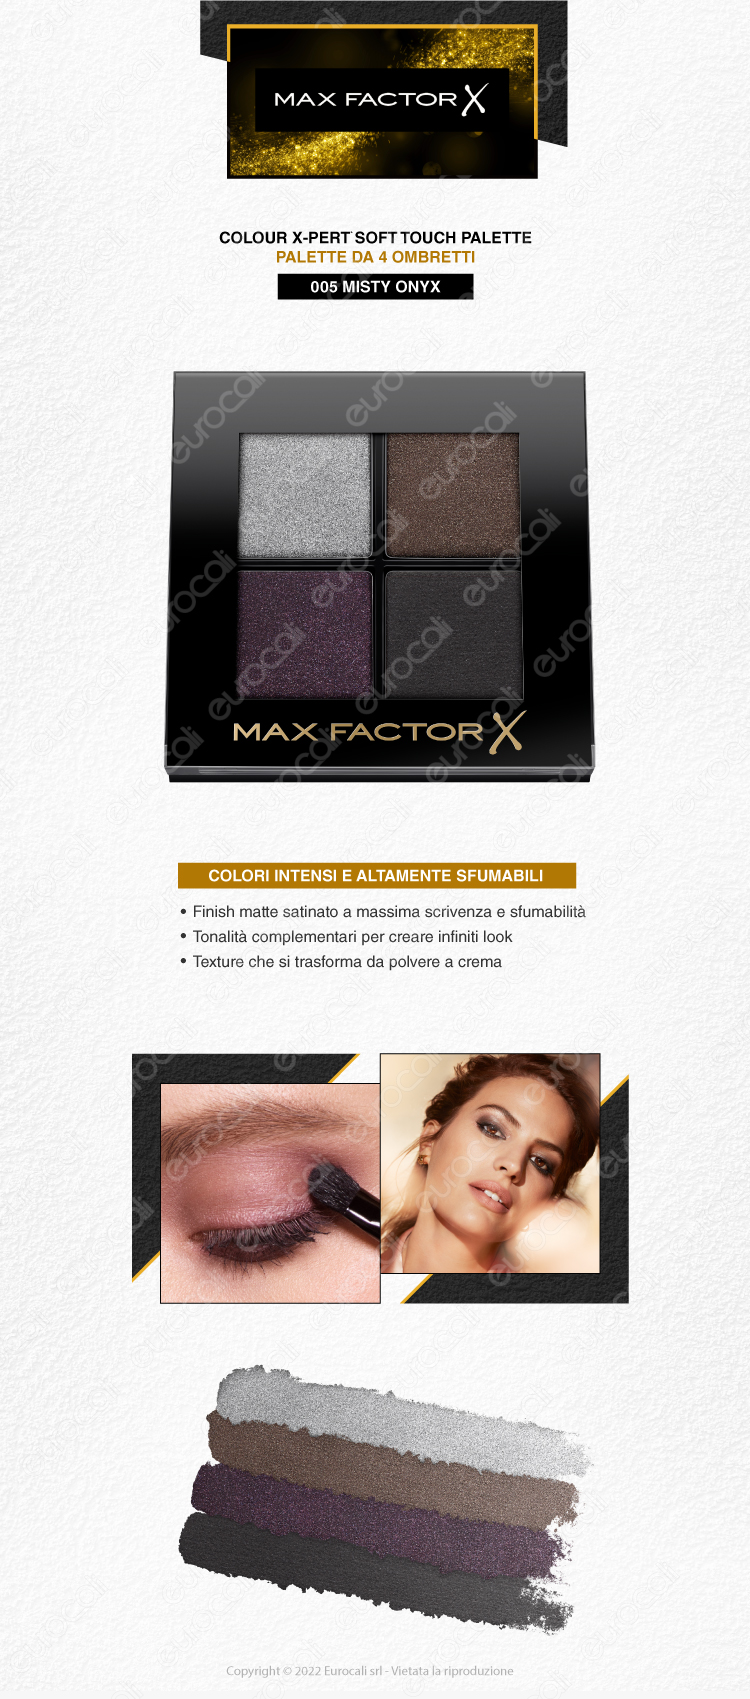 max factor palette ombretti 4 colori x-pert